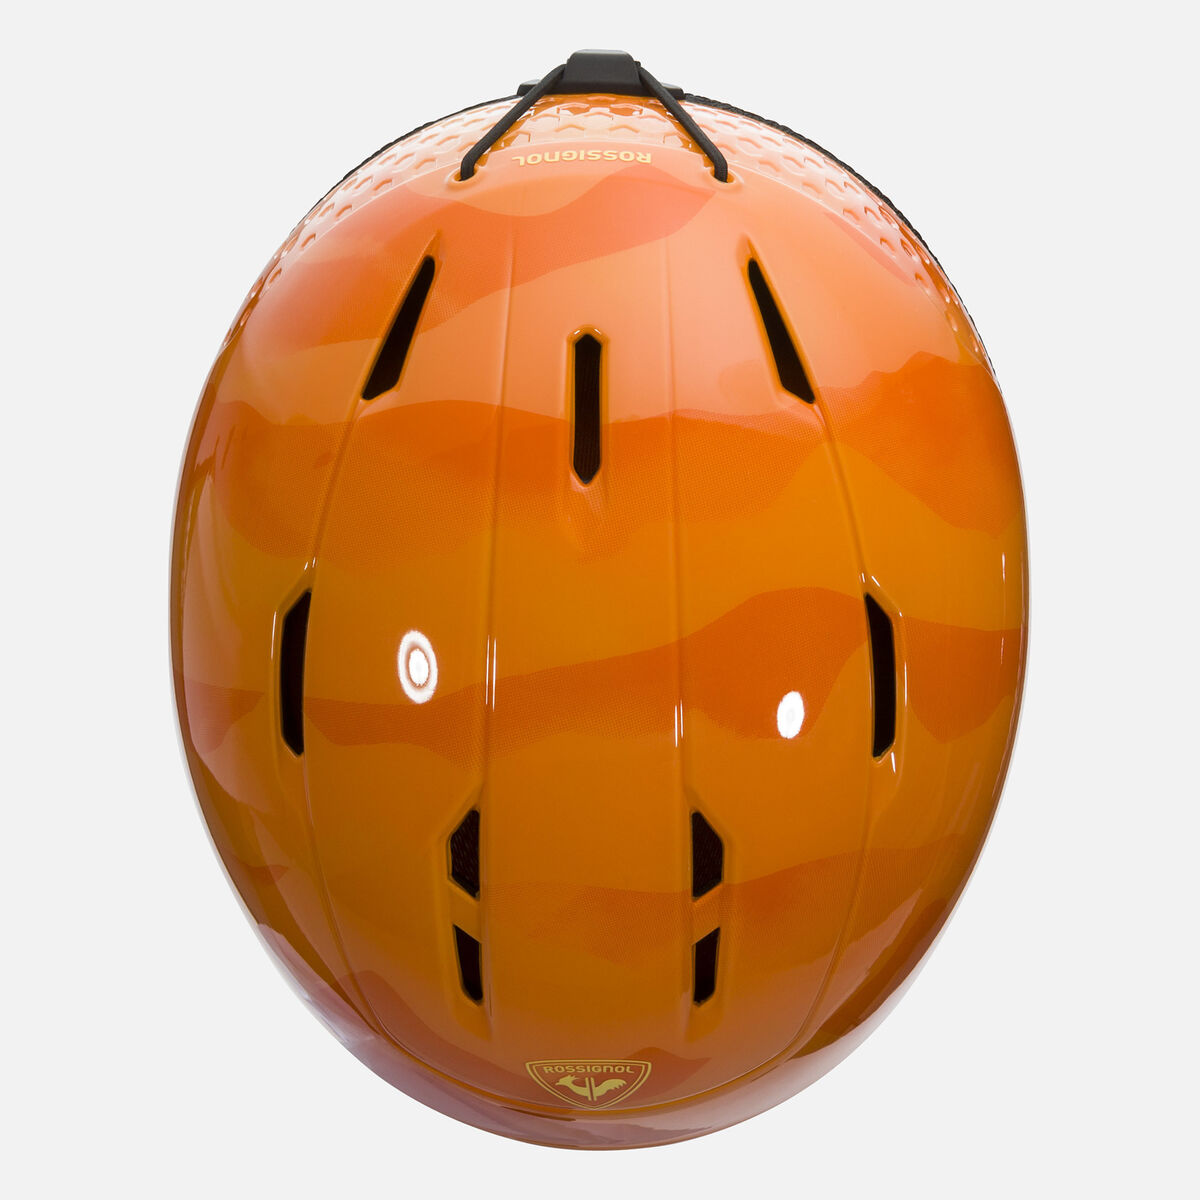 Rossignol KINDER Helm WHOOPEE IMPACTS Orange